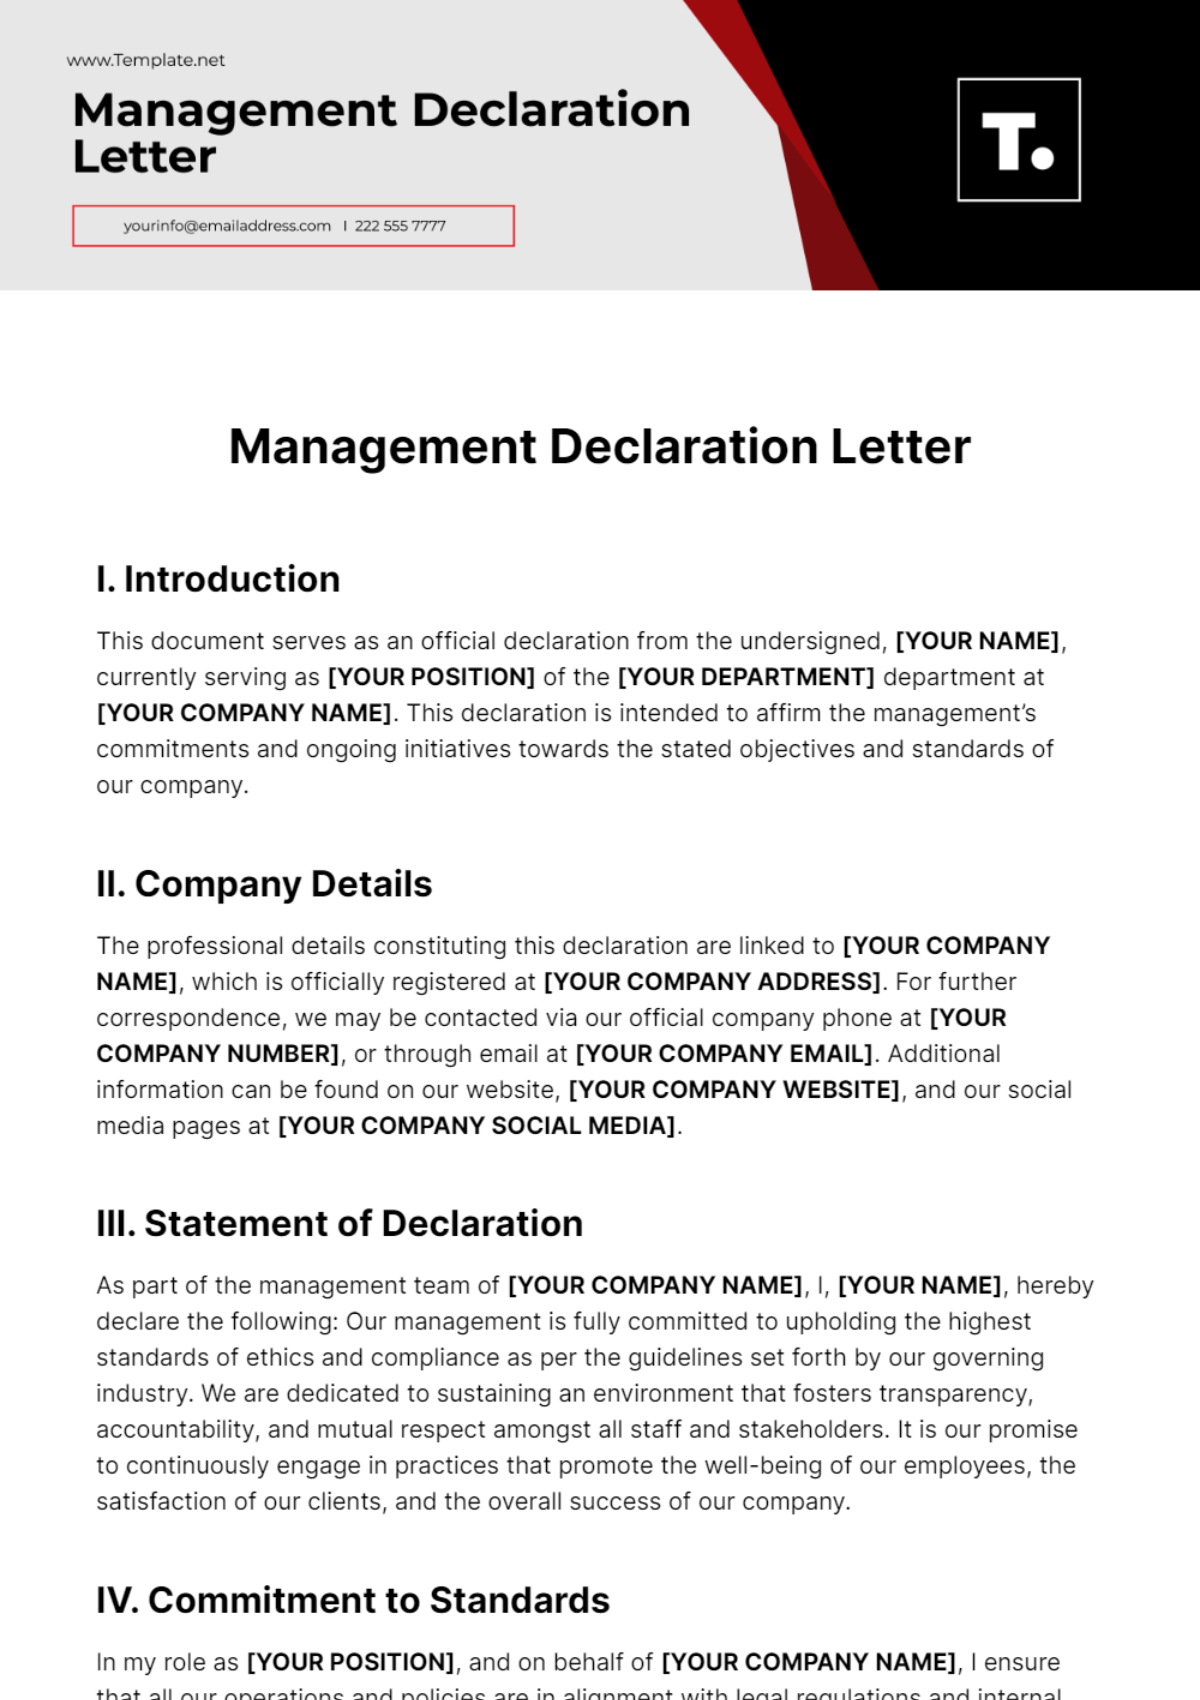 Management Declaration Letter Template